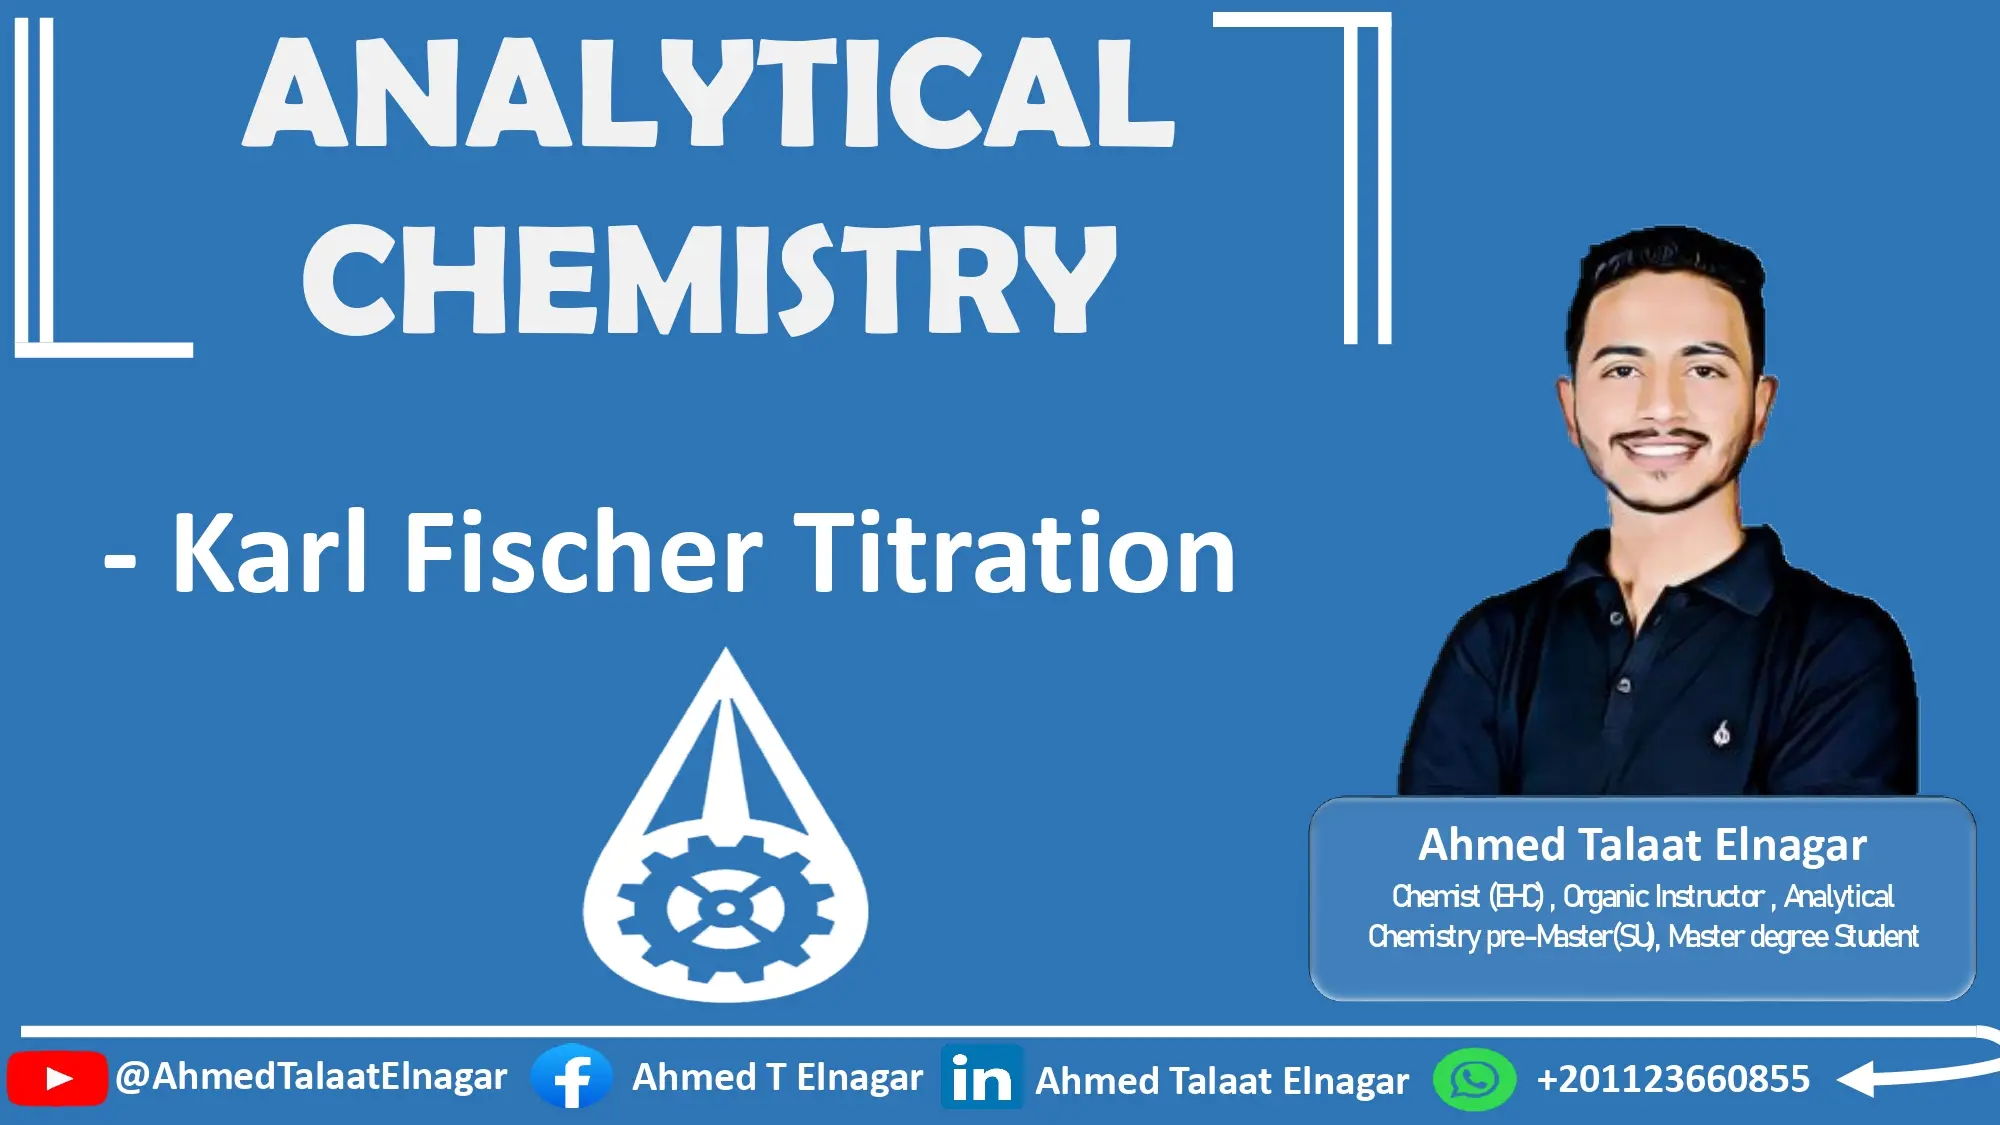 Analytical chemistry: Karl Fischer Titration